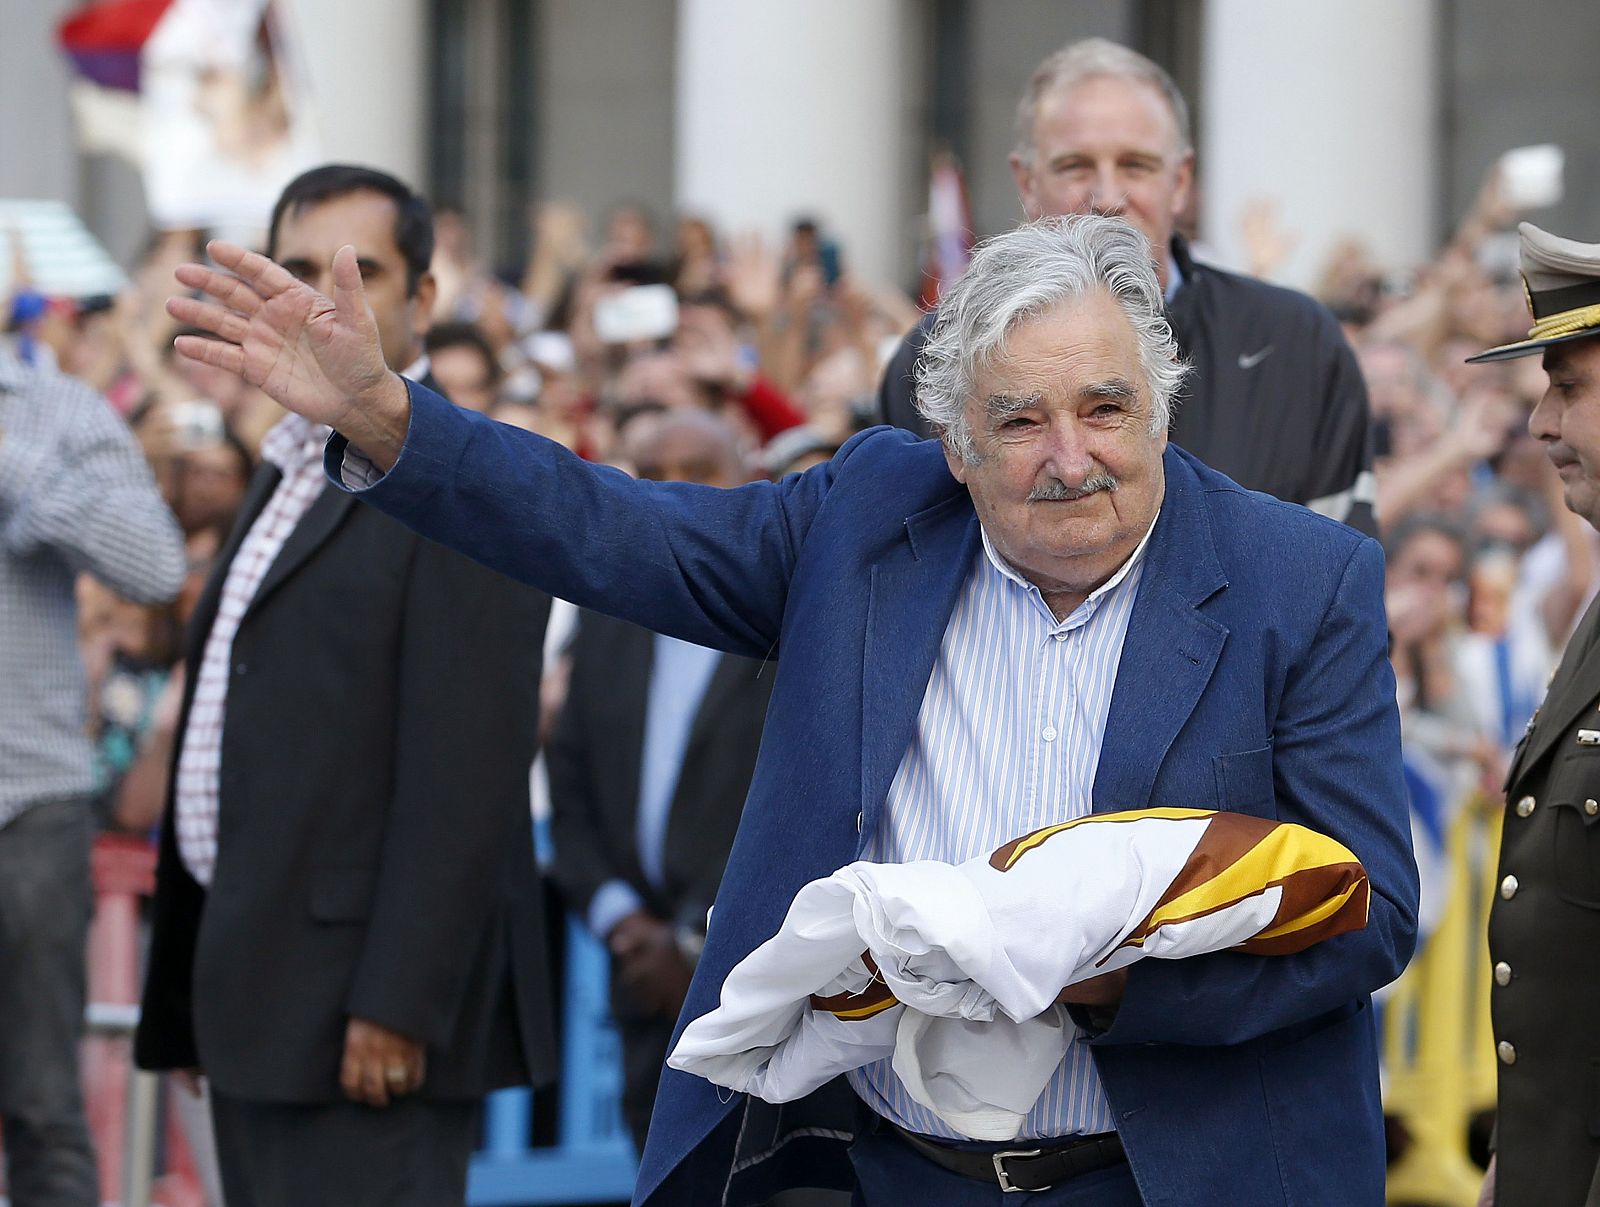 El presidente de Uruguay, José Mujica, saluda a la multitud tras recoger el estandarte que ha ondeado durante su mandato.